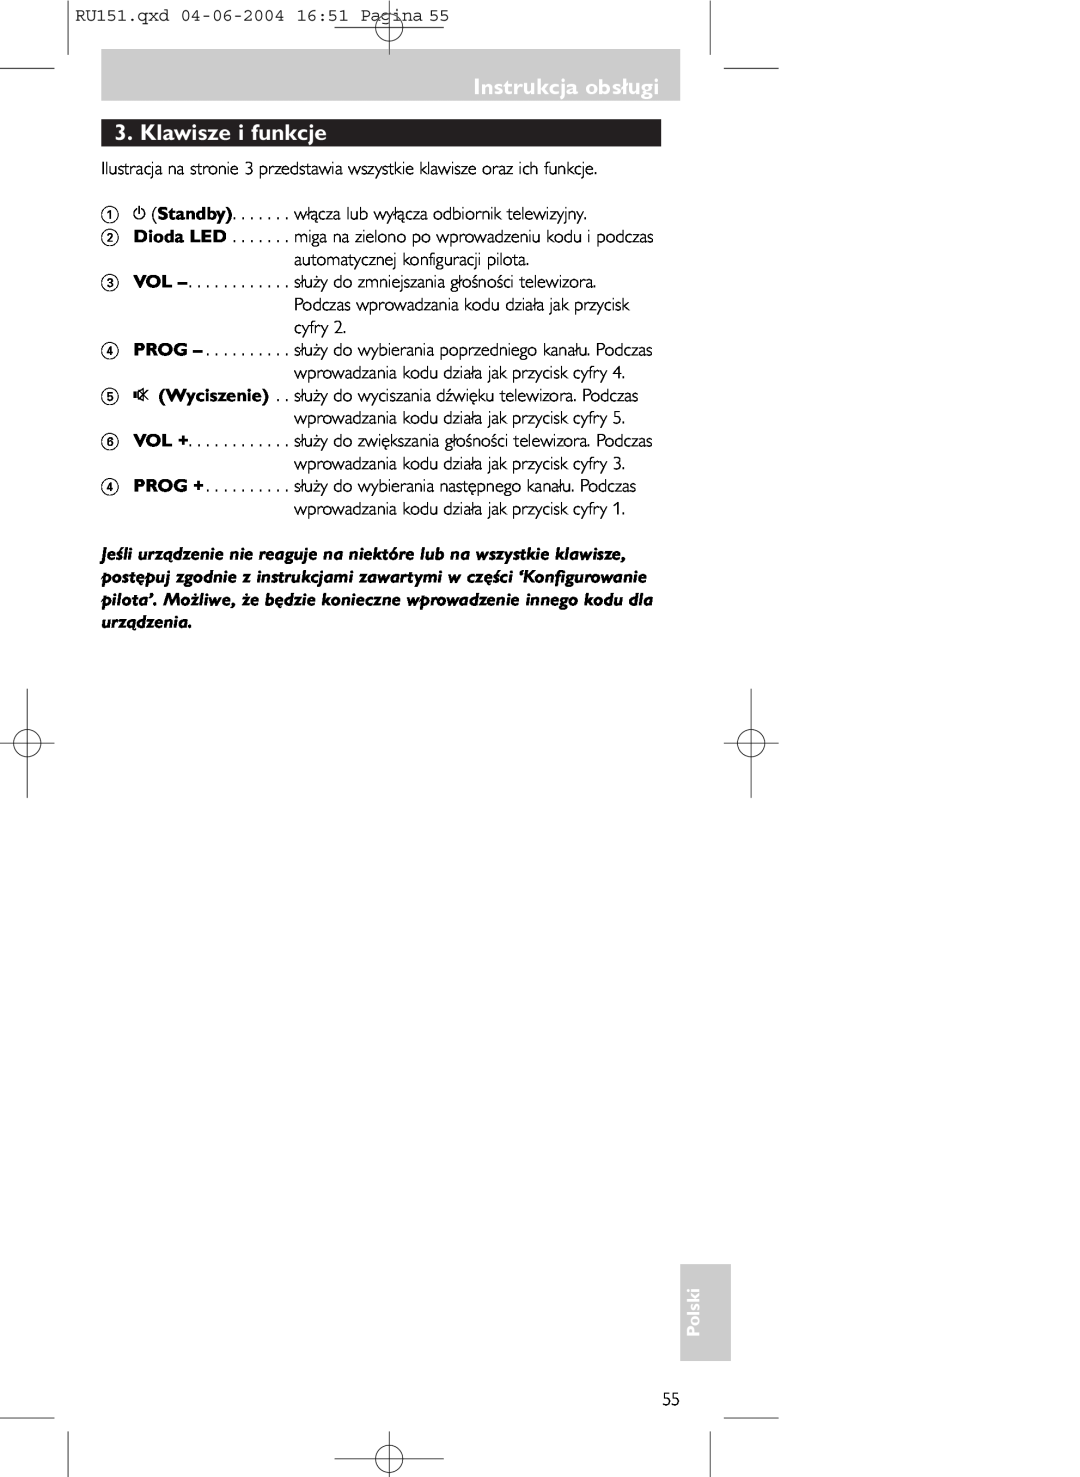 Philips SBC RU 151 manual Instrukcja obsługi 3. Klawisze i funkcje, Polski 